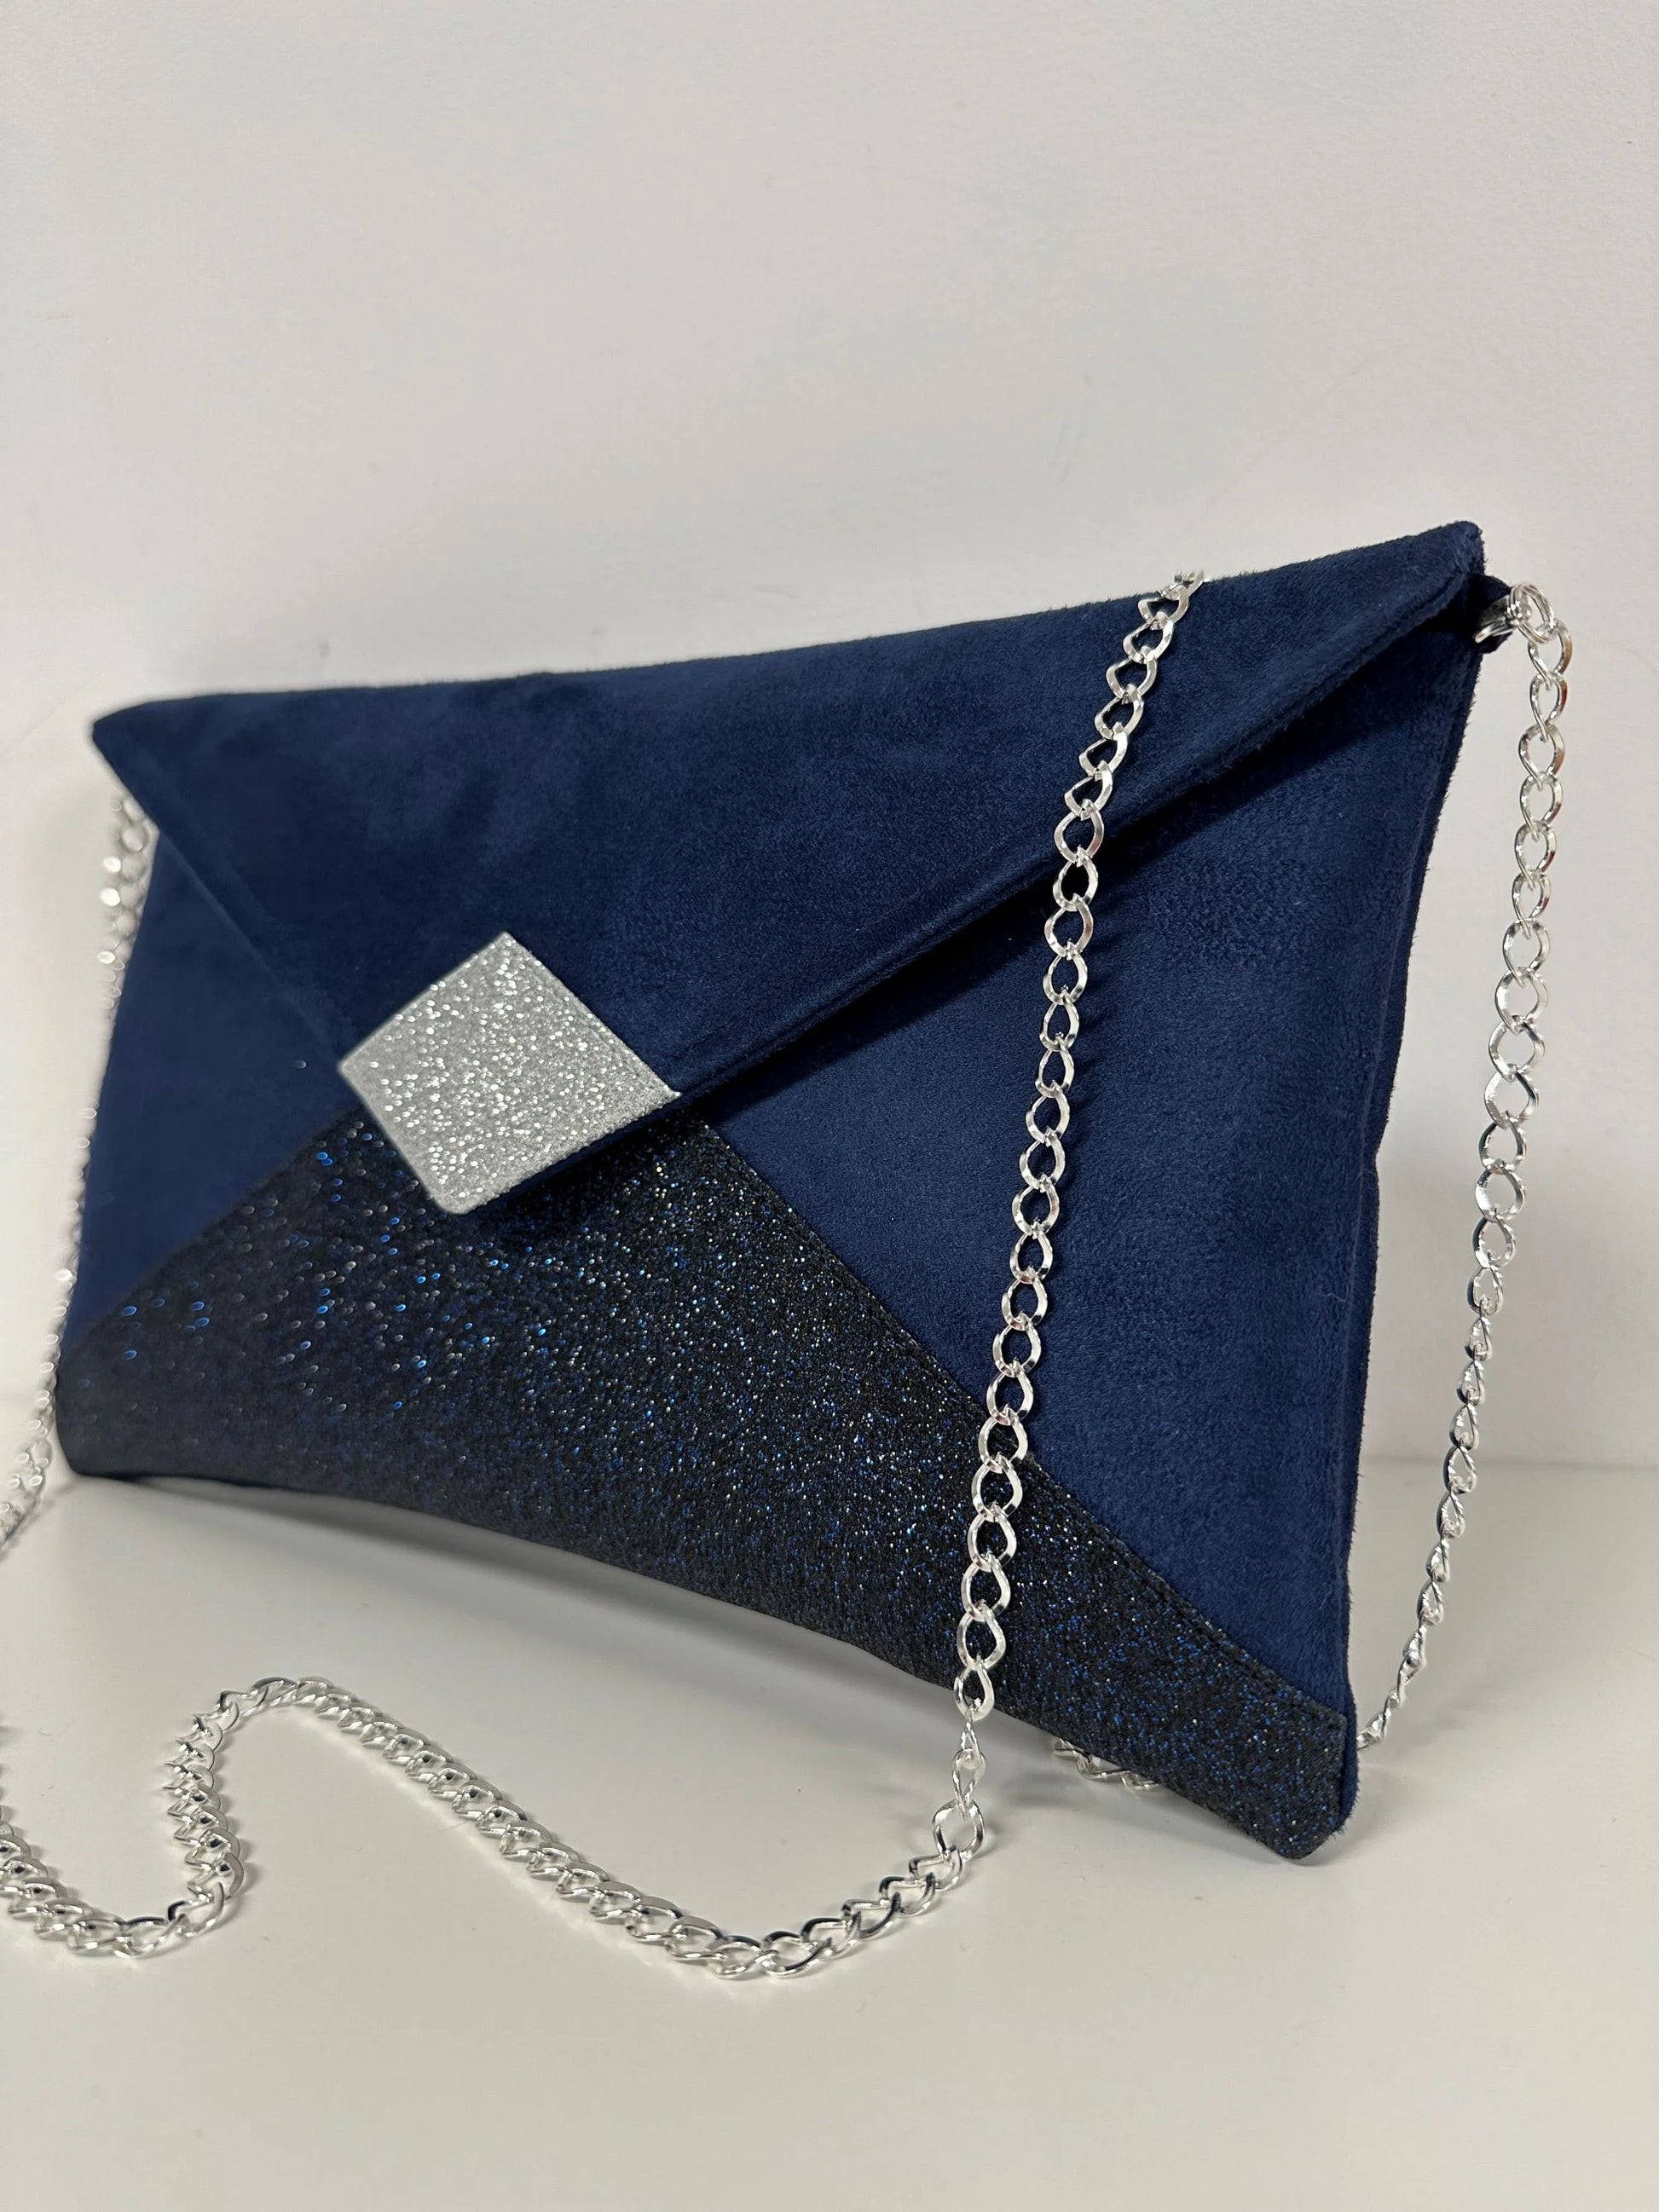 Le sac pochette Isa à paillettes bleu marine et argentées, avec chainette amovible.